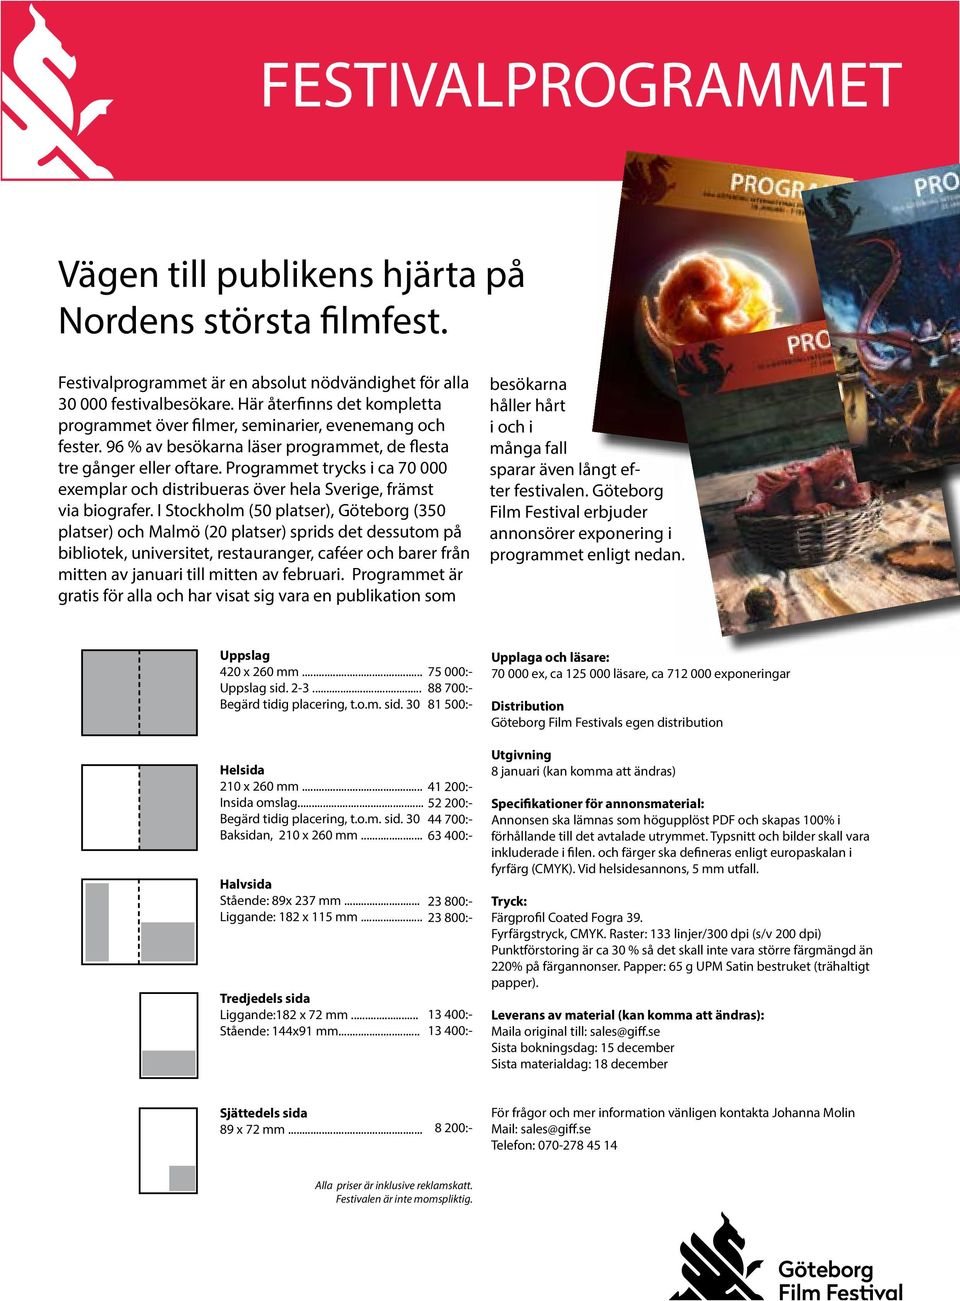 Programmet trycks i ca 70 000 exemplar och distribueras över hela Sverige, främst via biografer.